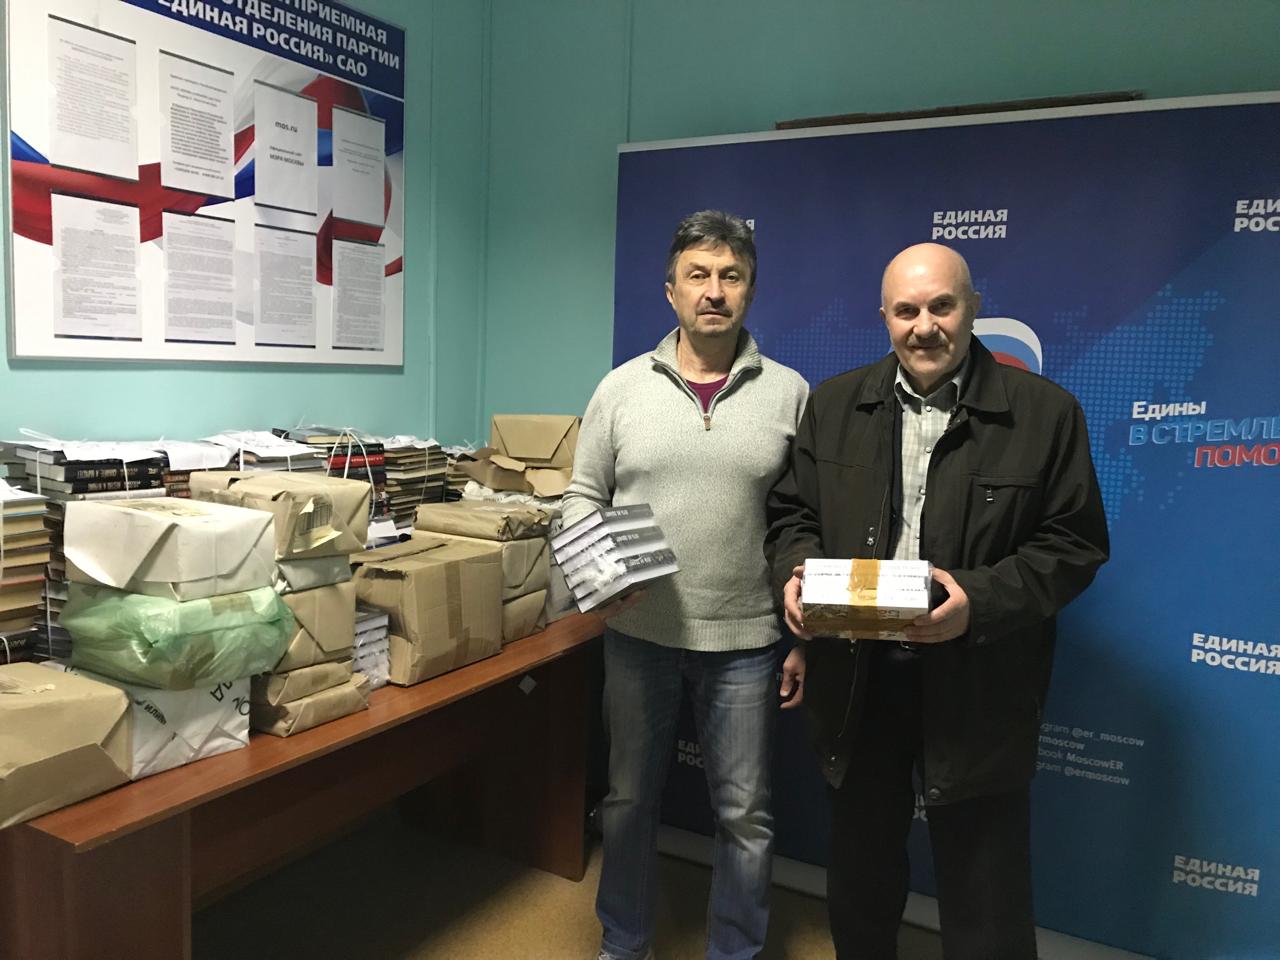 Писатель Петр Алешкин (справа) передал книги для жителей Донбасса. Фото: Личный архив